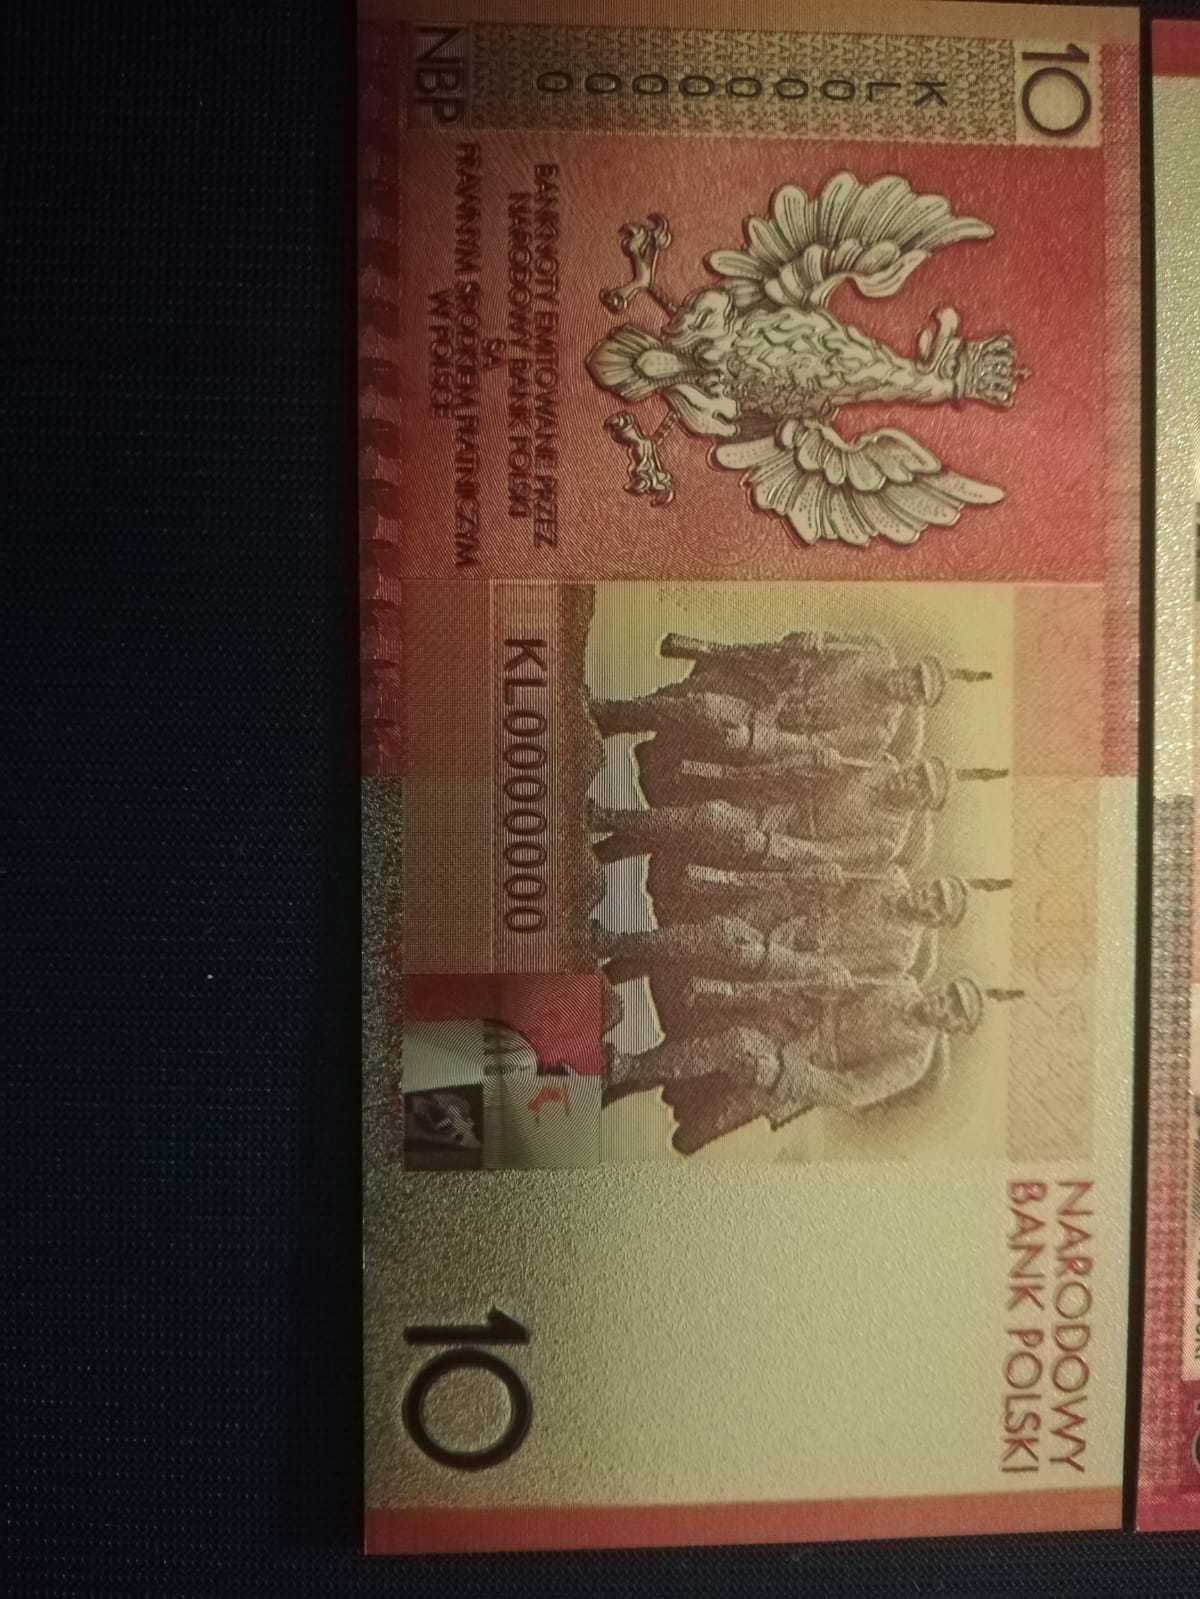 Józef Piłsudski 10 zł - złoty banknot kolekcjonerski